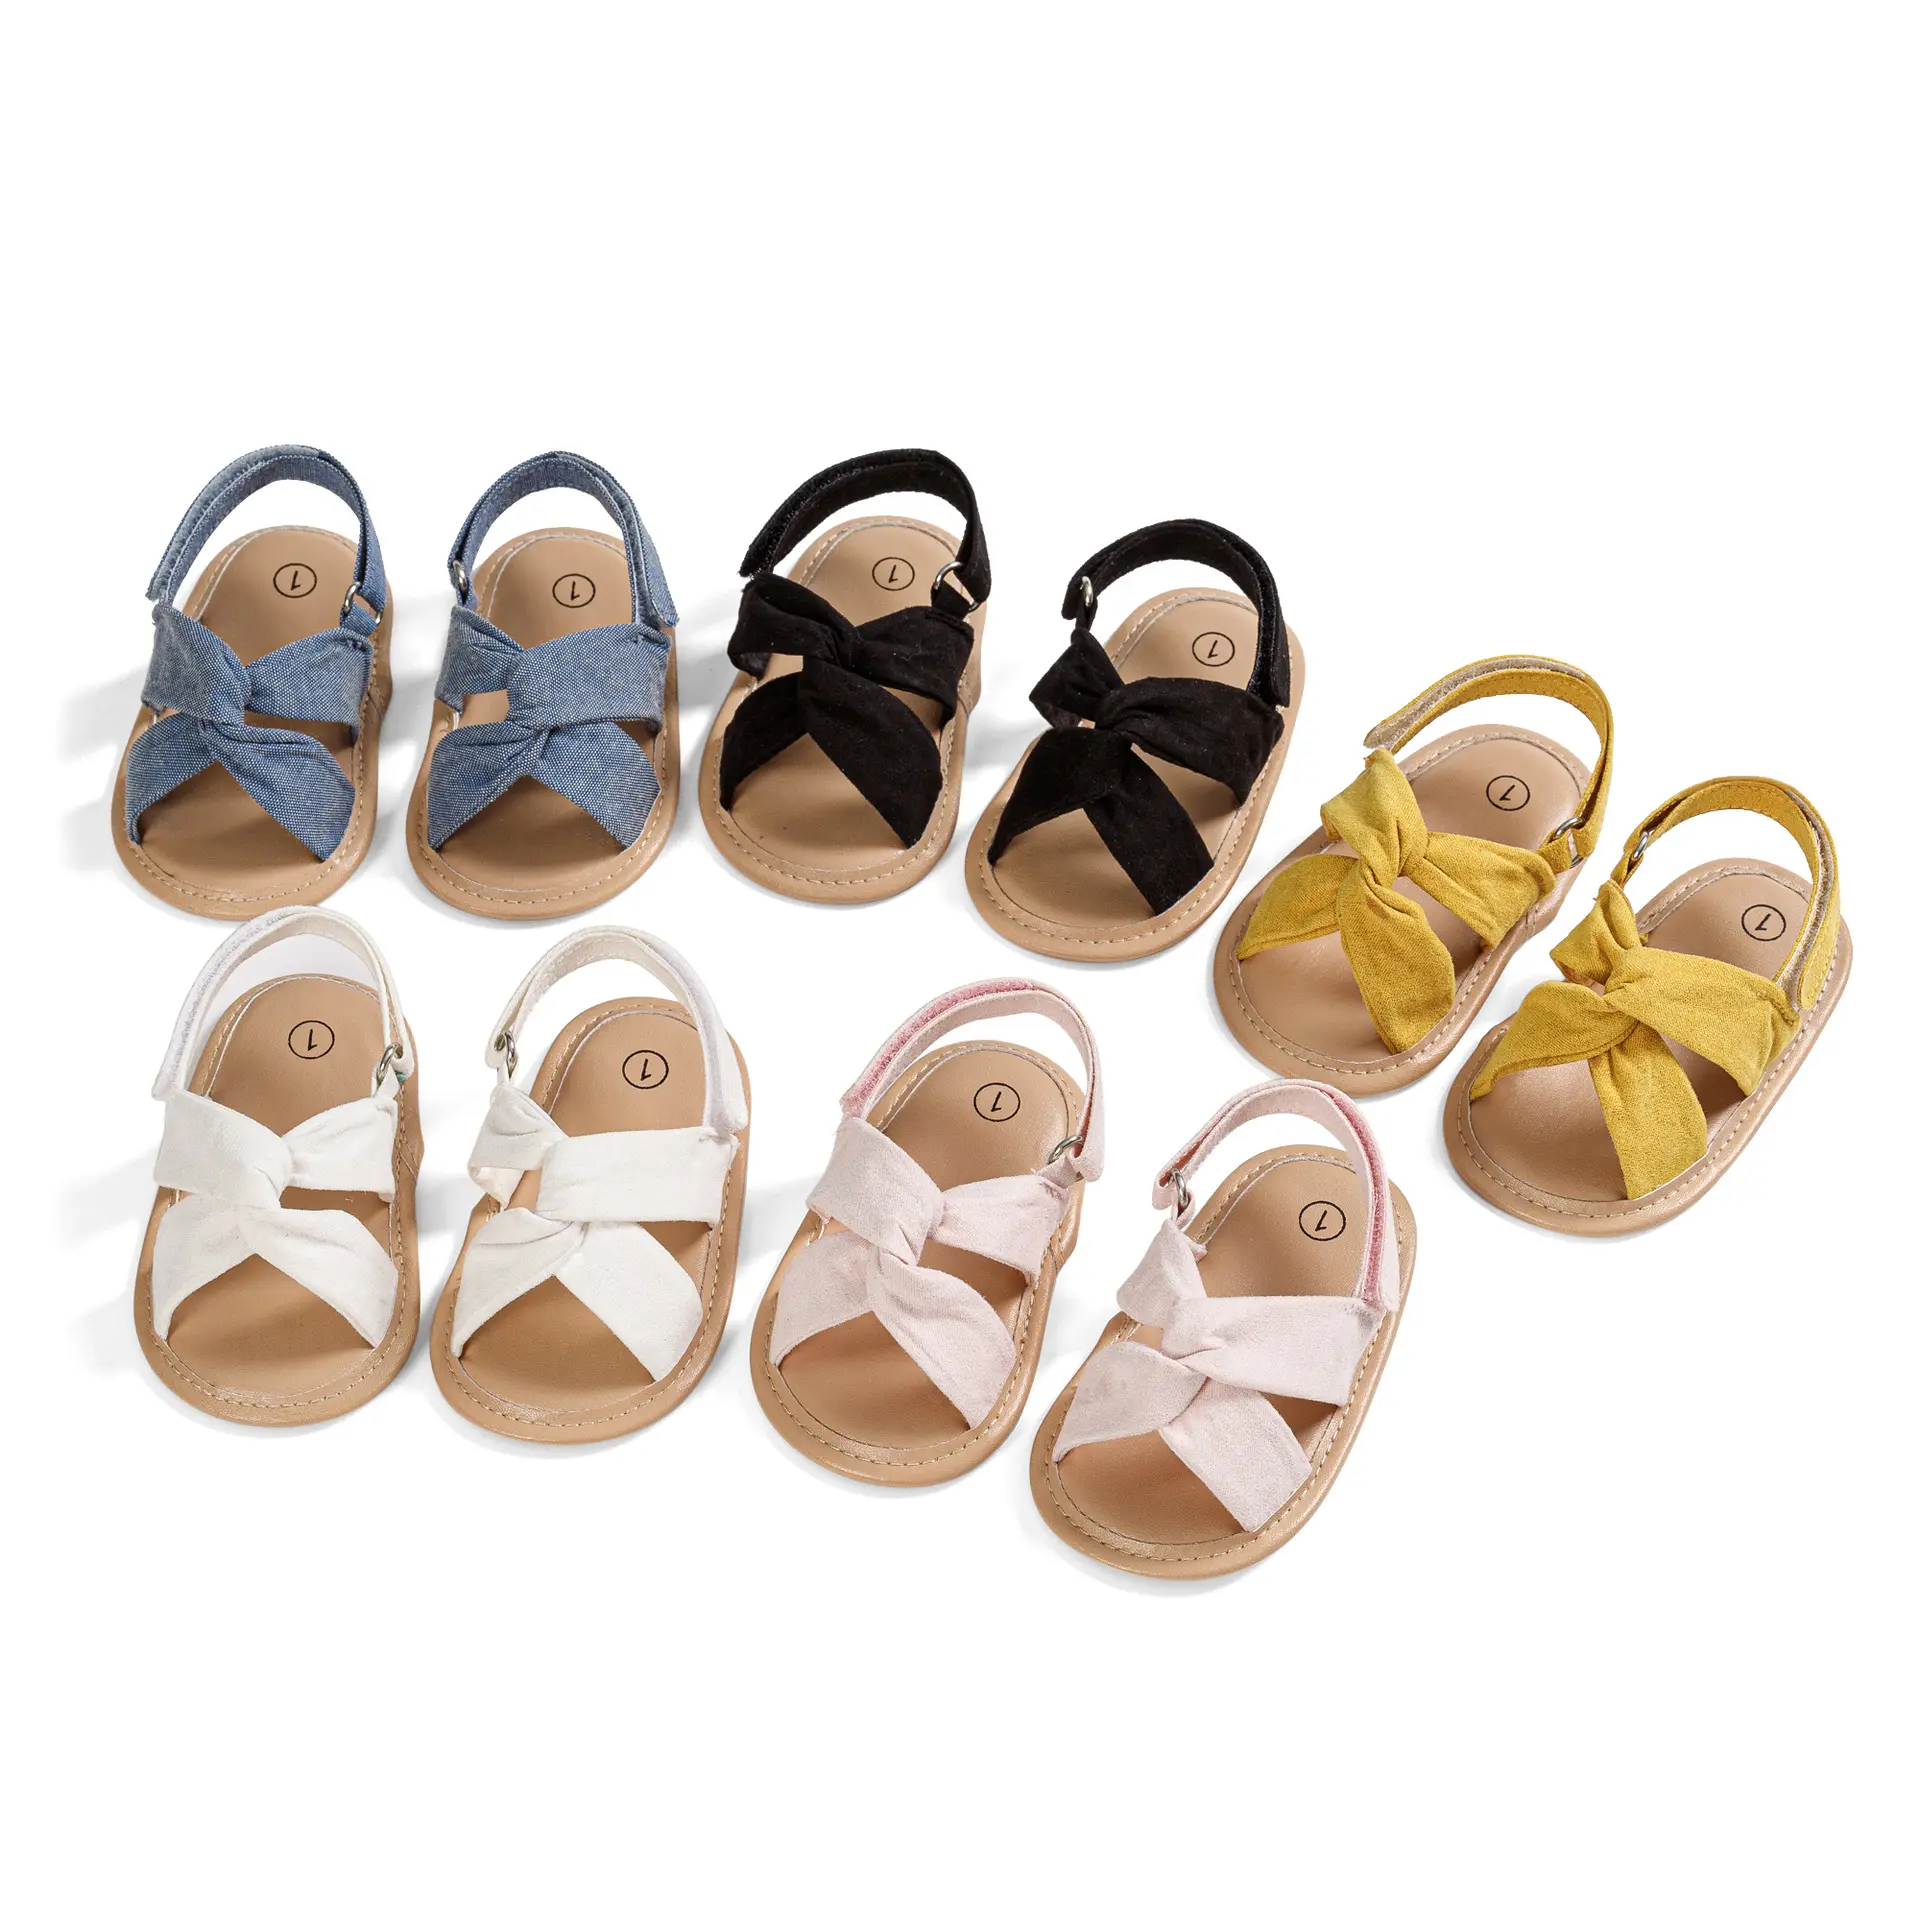 Sandalias de bebé transpirables Súper suaves de verano de 0 a 1 año de edad, suela blanda antideslizante, zapatos de bebé para niños